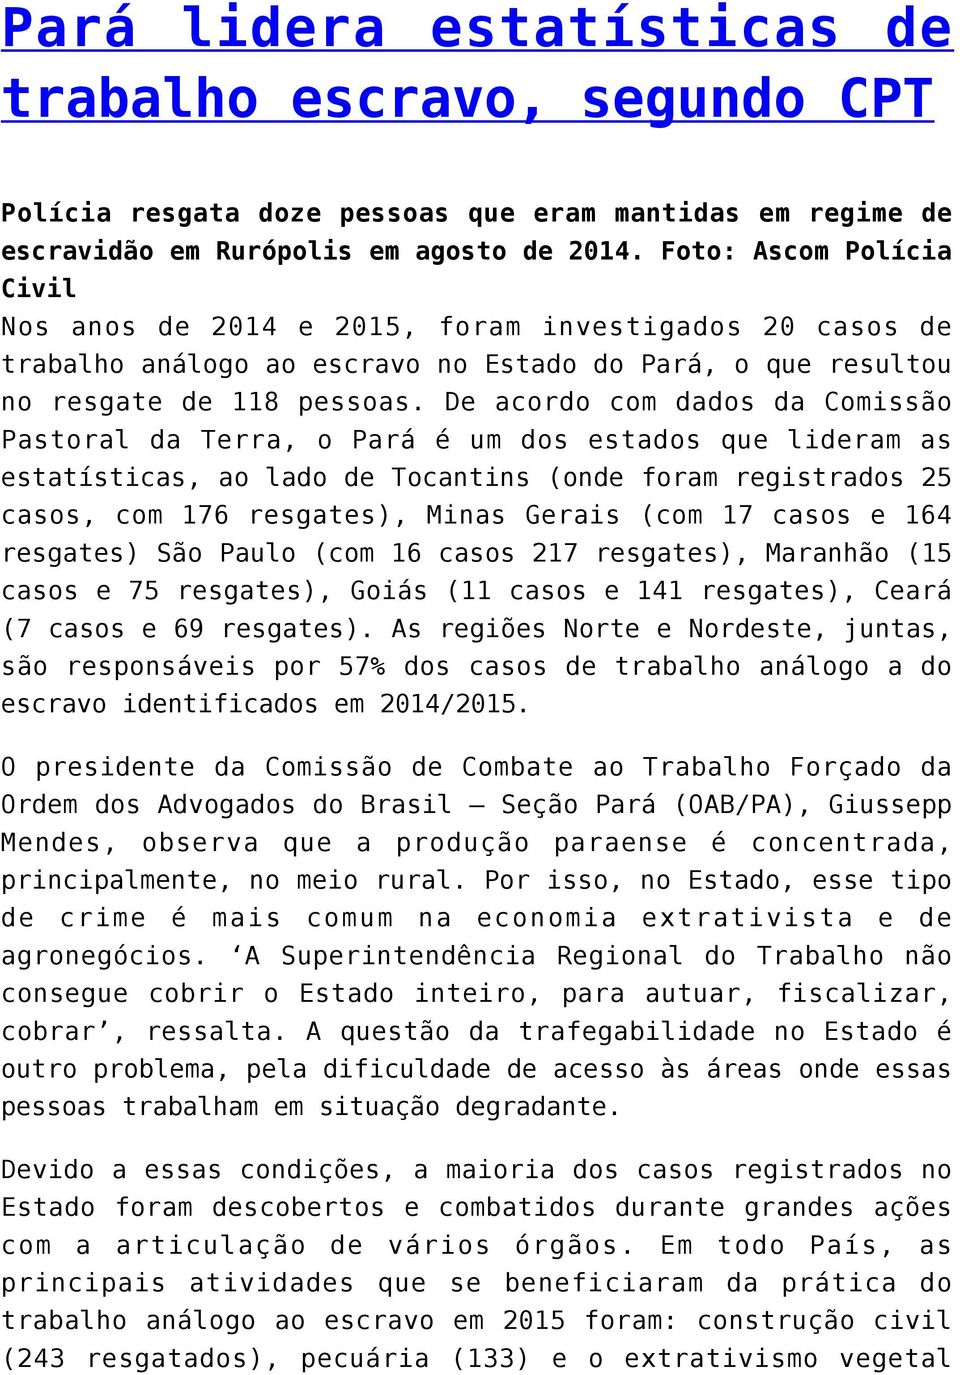 De acordo com dados da Comissão Pastoral da Terra, o Pará é um dos estados que lideram as estatísticas, ao lado de Tocantins (onde foram registrados 25 casos, com 176 resgates), Minas Gerais (com 17